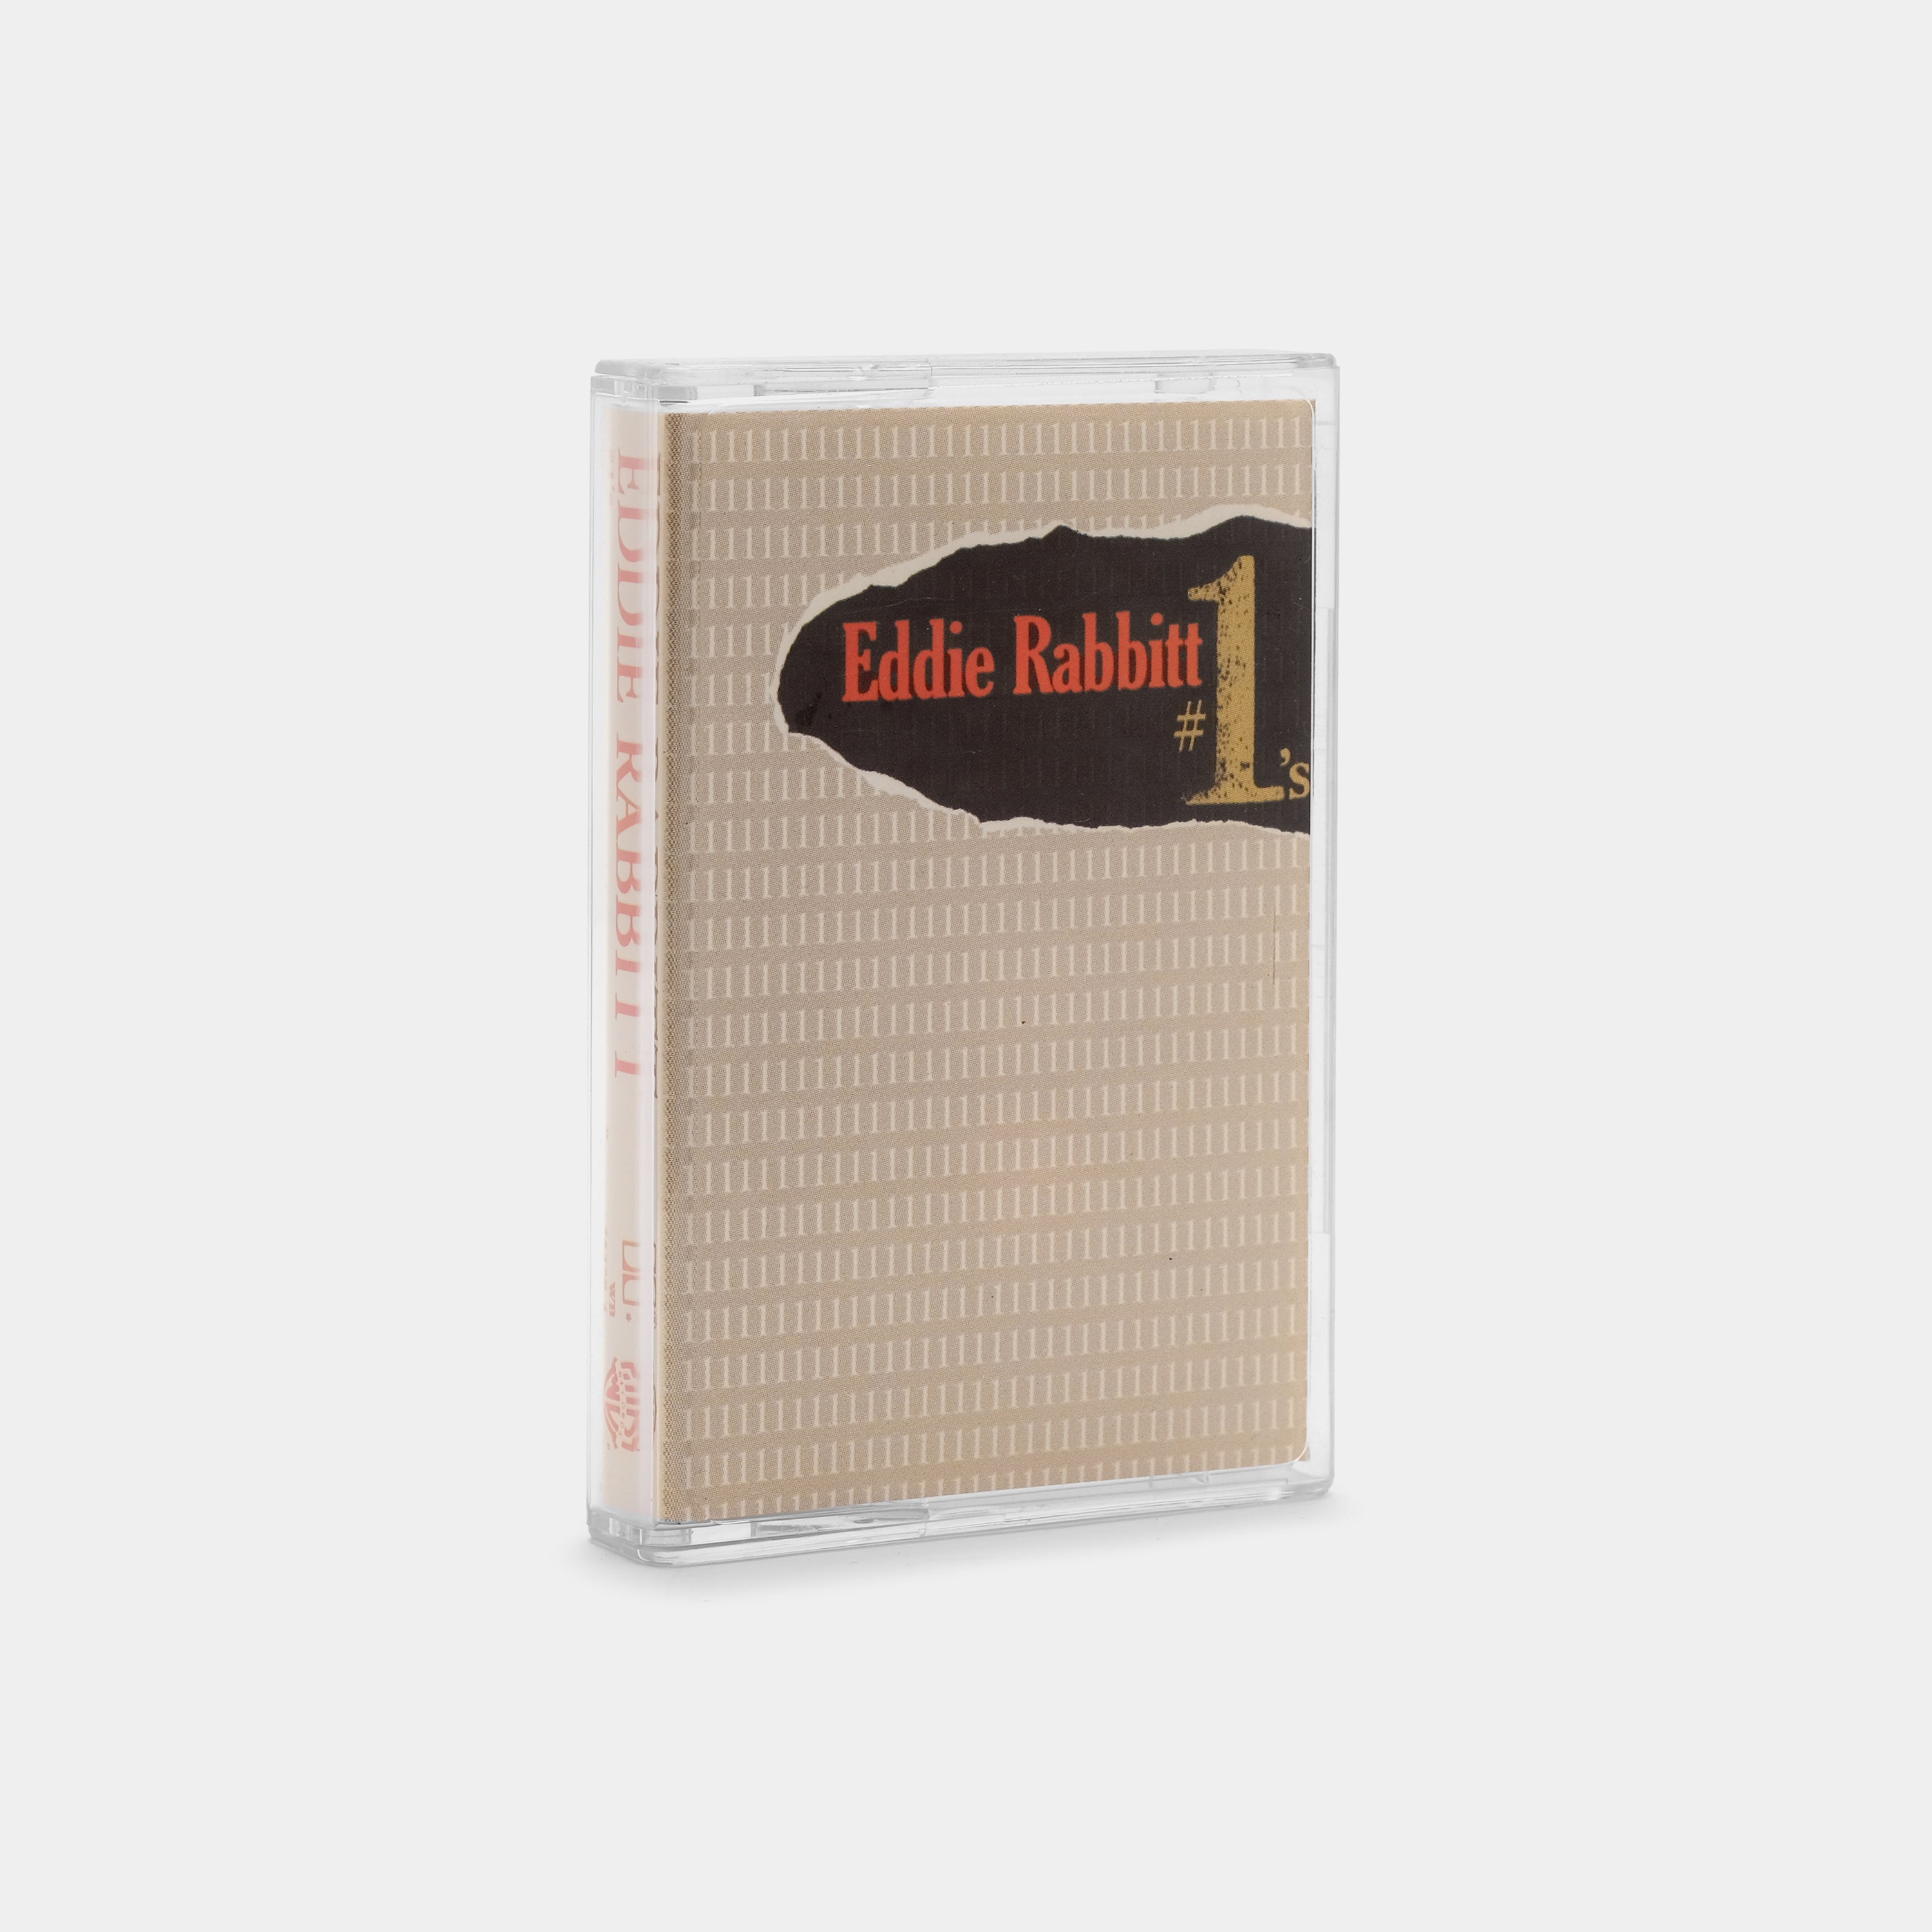 Eddie Rabbitt - #1's Cassette Tape